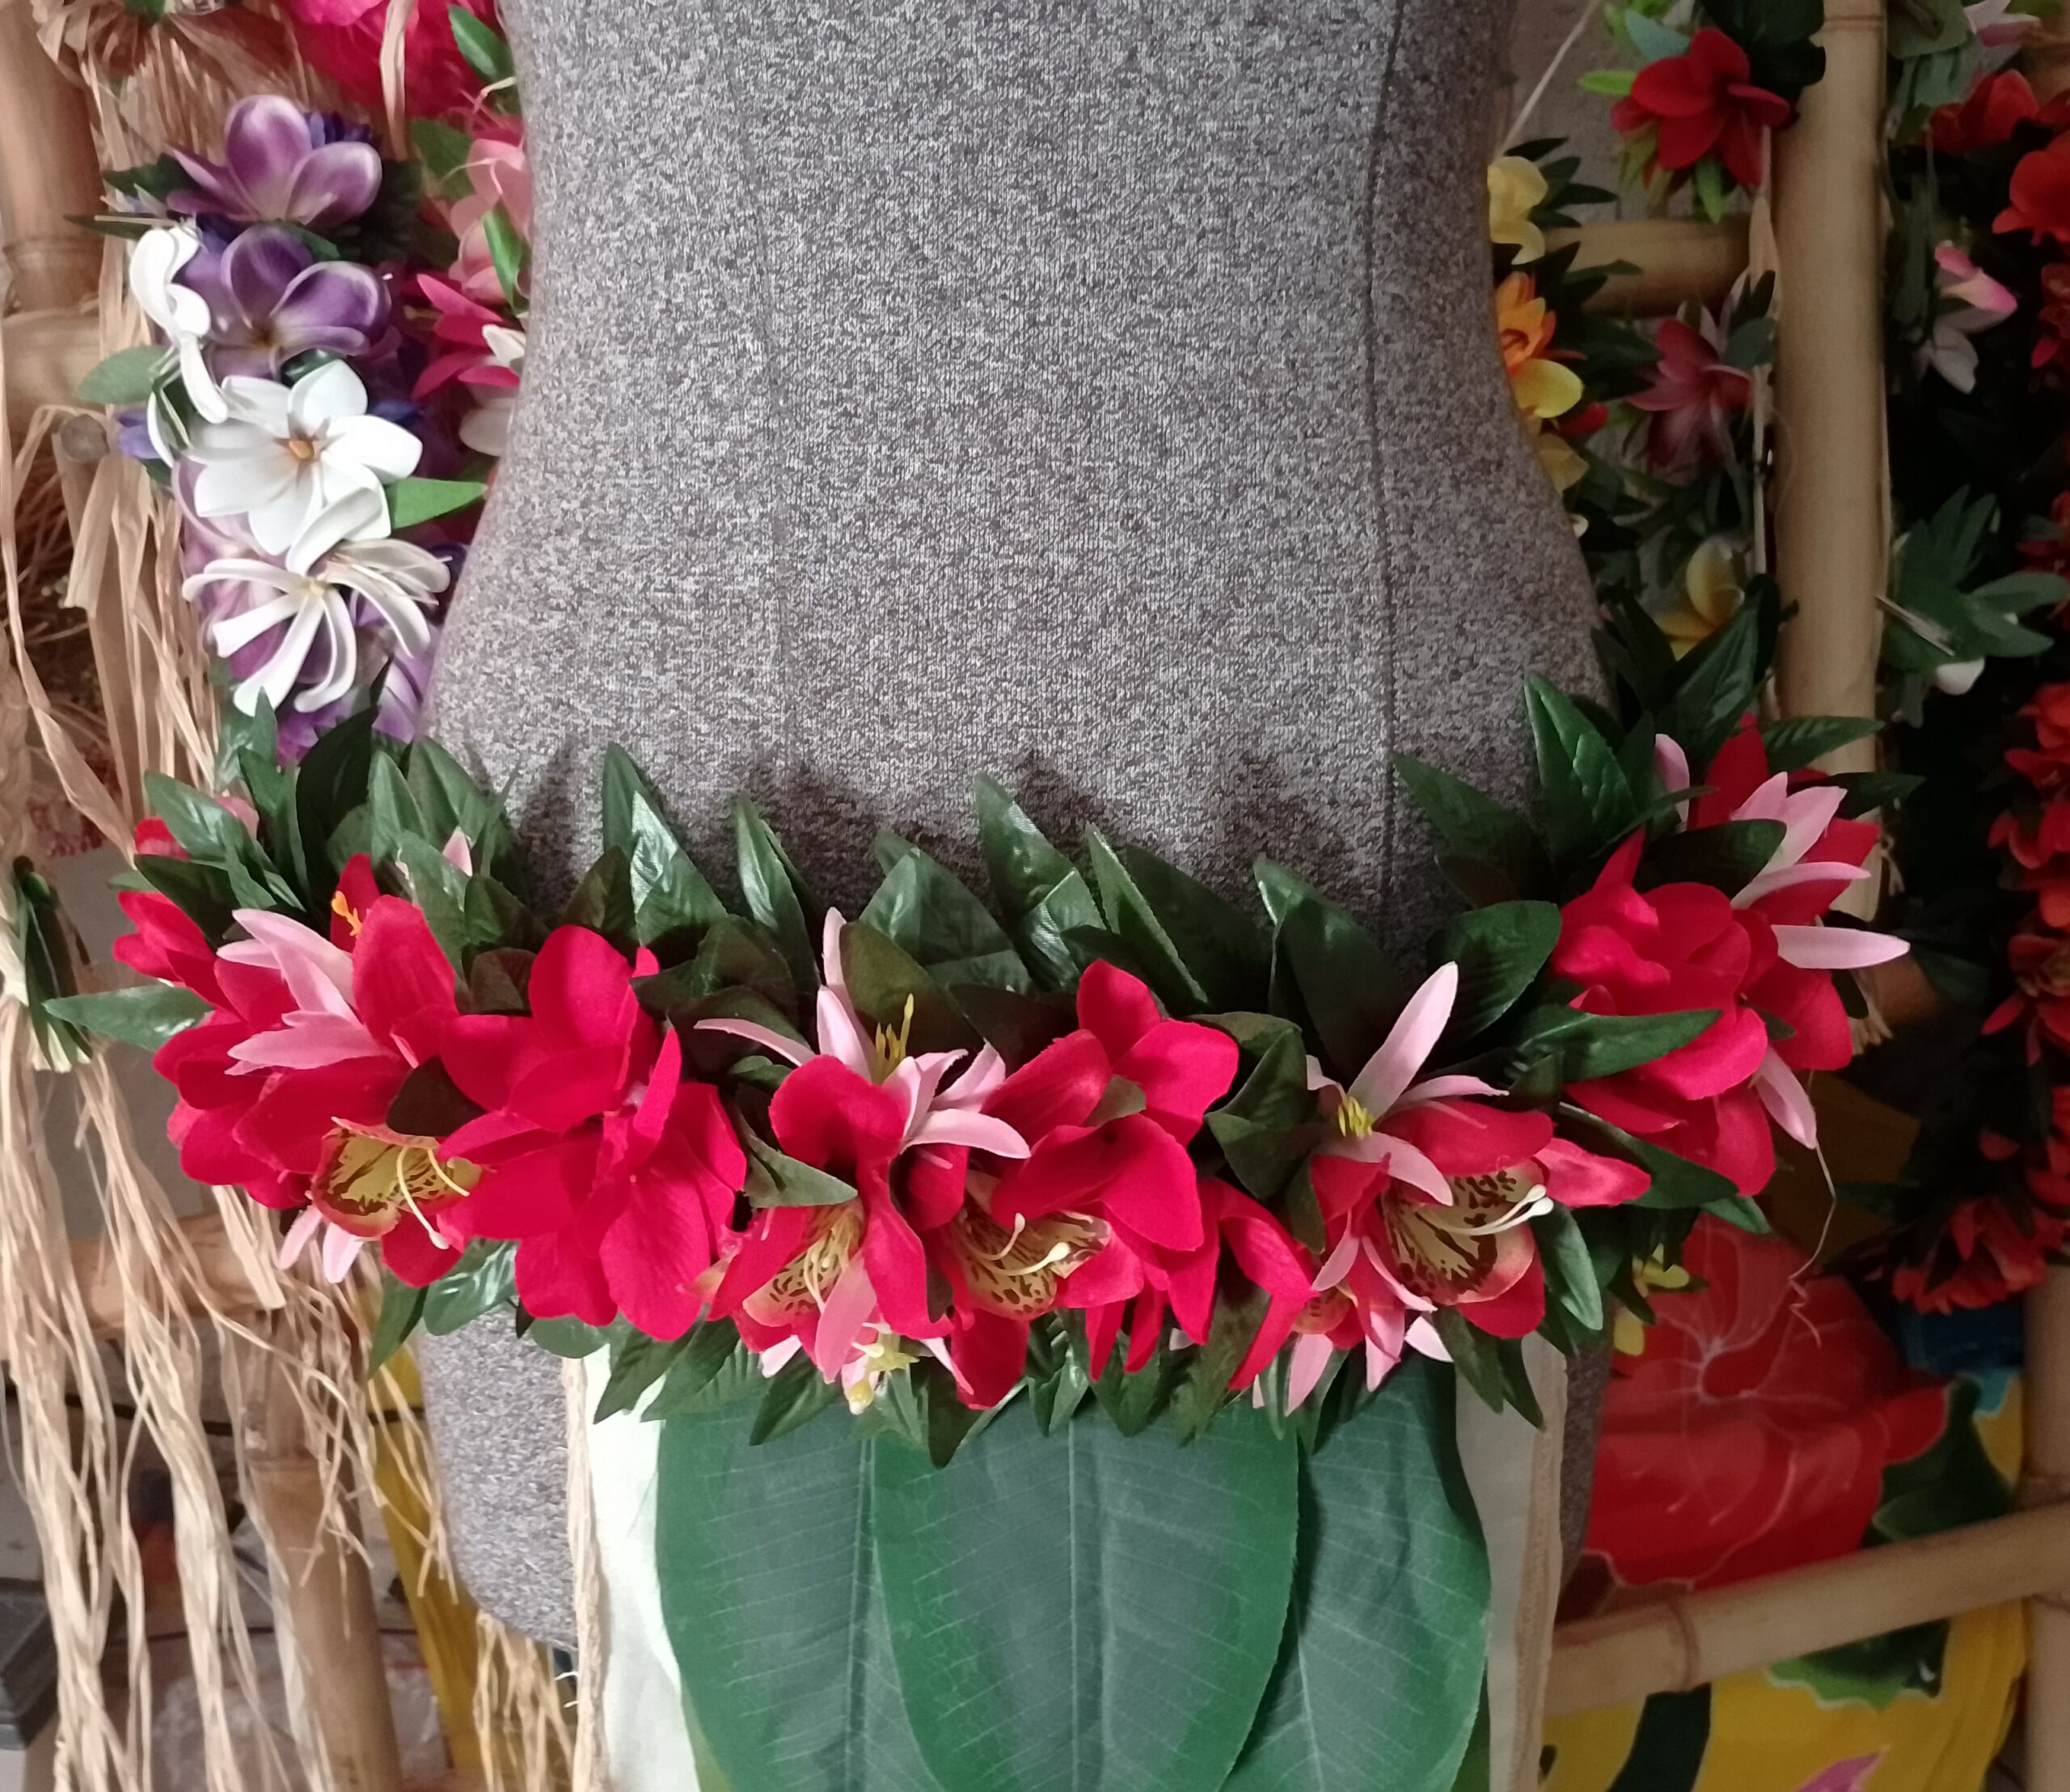 Combiné ori tahiti couronne et taille fleurie assorties Viate.e.Tiare créations avec tipaniers et orchidées rouges et lys roses